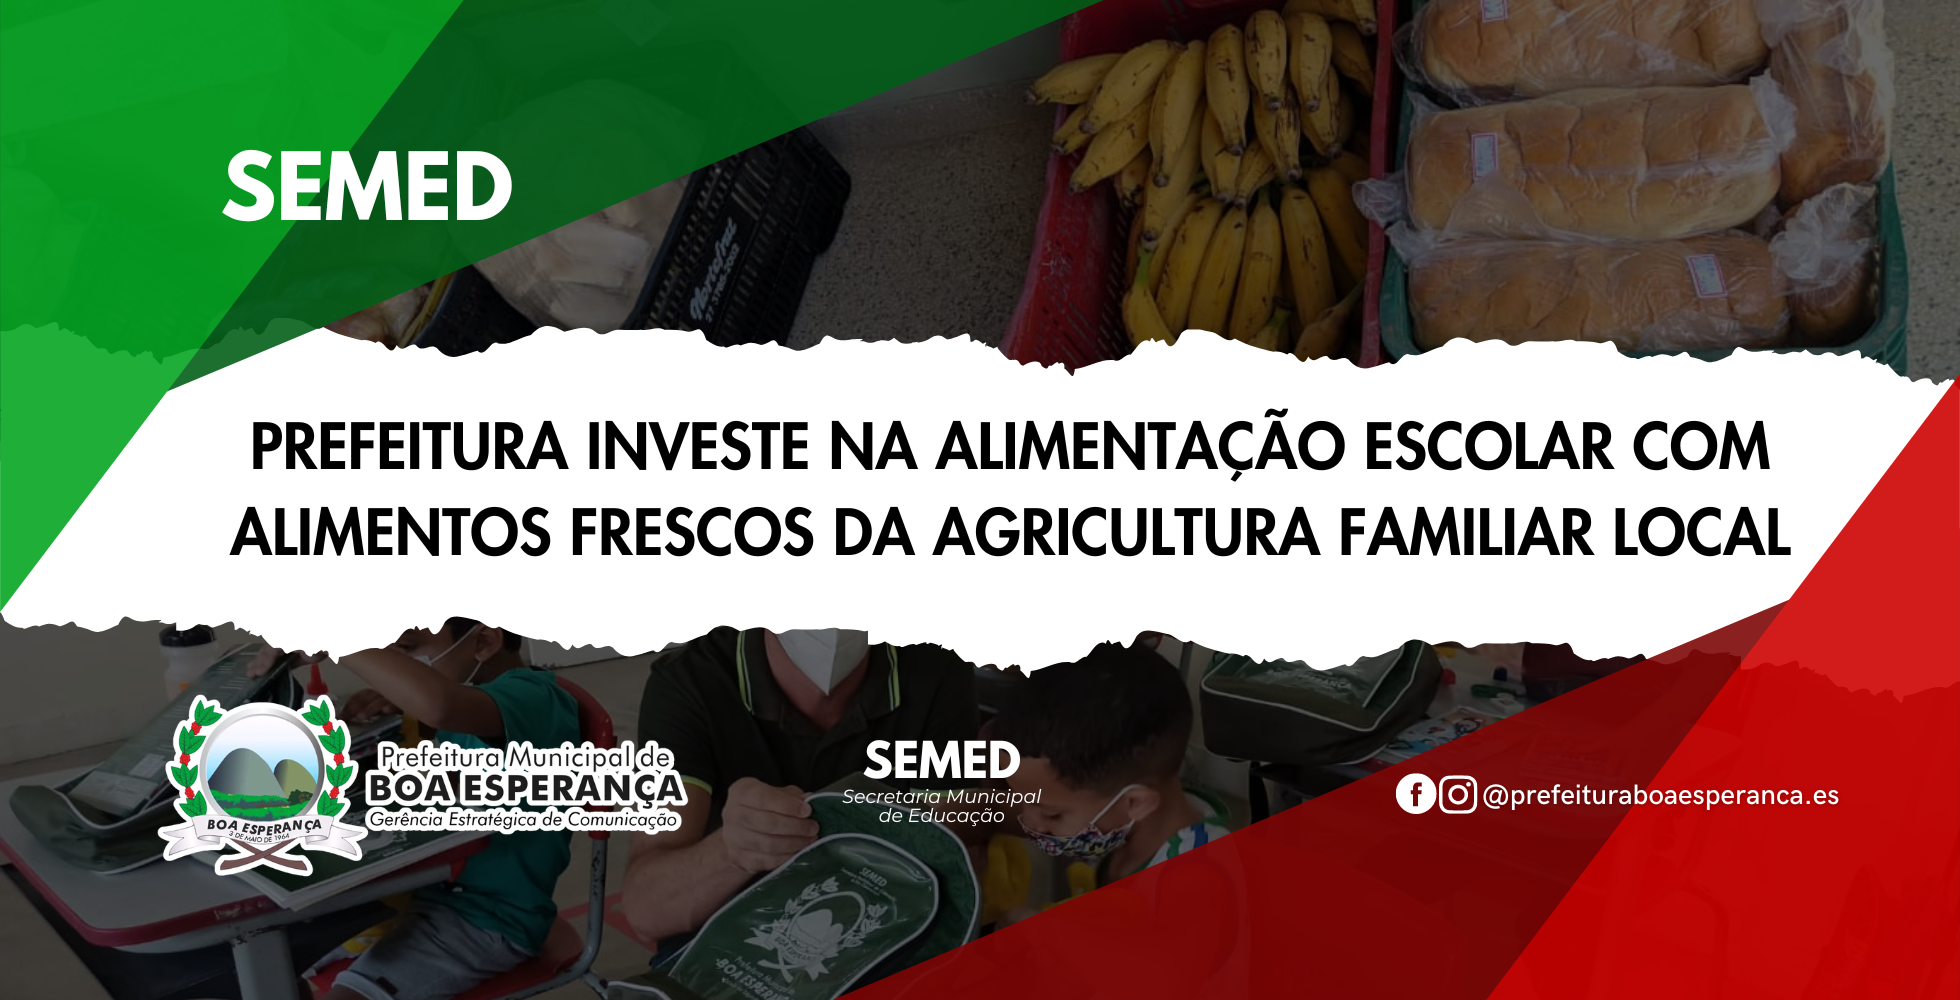 Prefeitura de Boa Esperança Investe na Agricultura Familiar para Alimentação Escolar